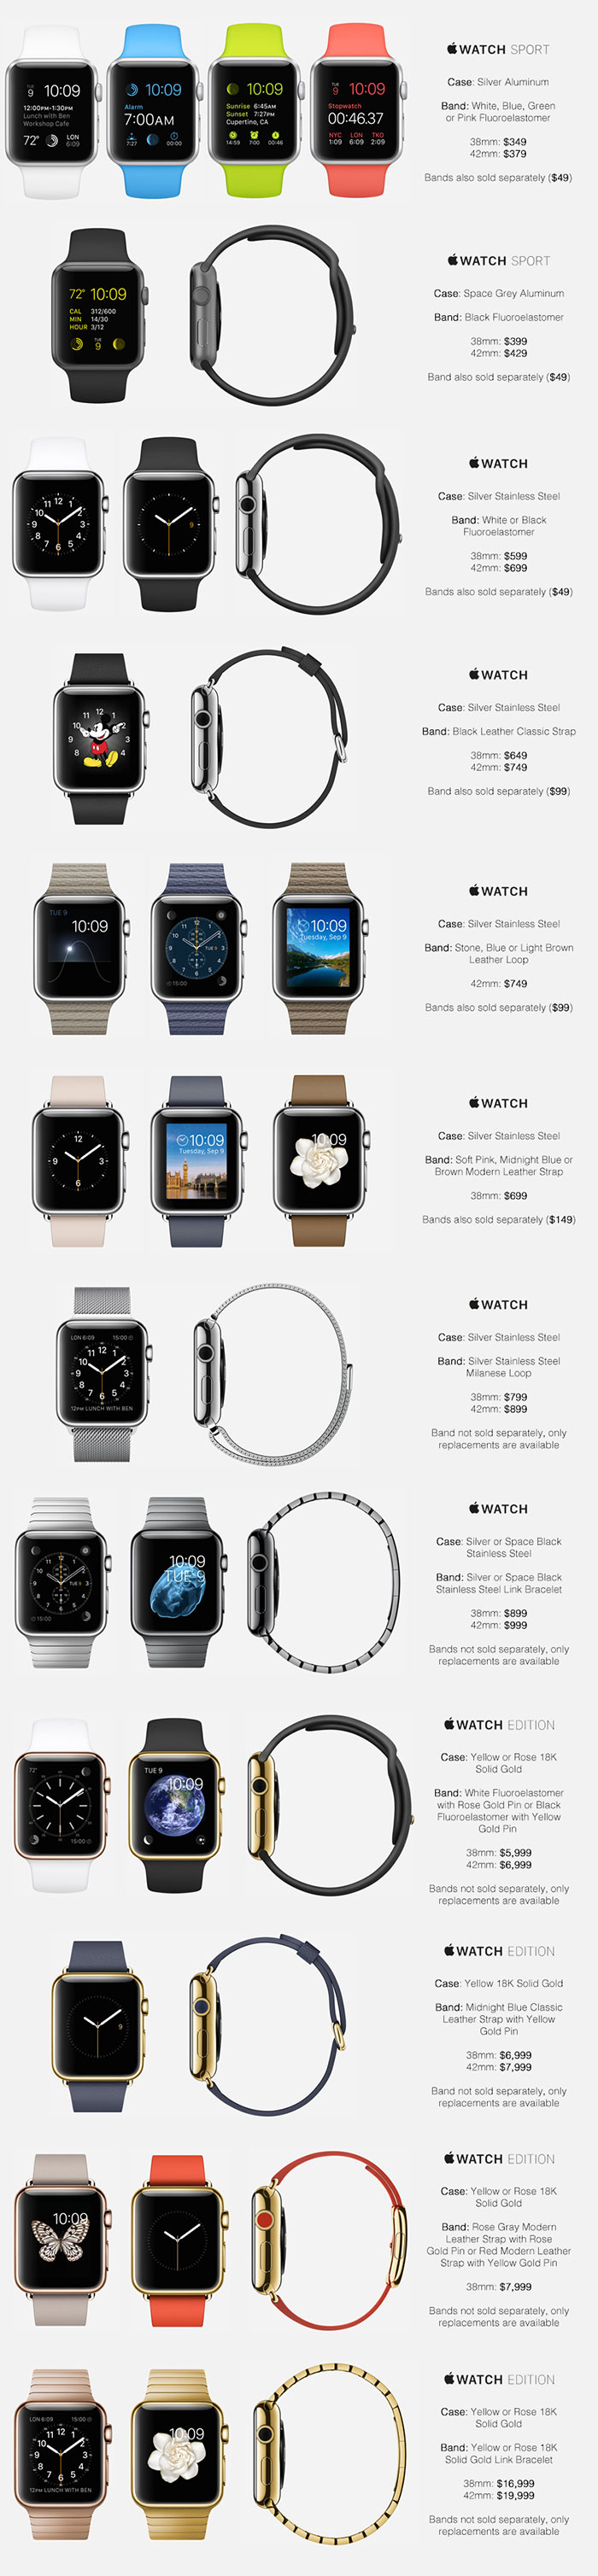 Δείτε τις τιμές που θα έχει το Apple Watch - Φωτογραφία 2